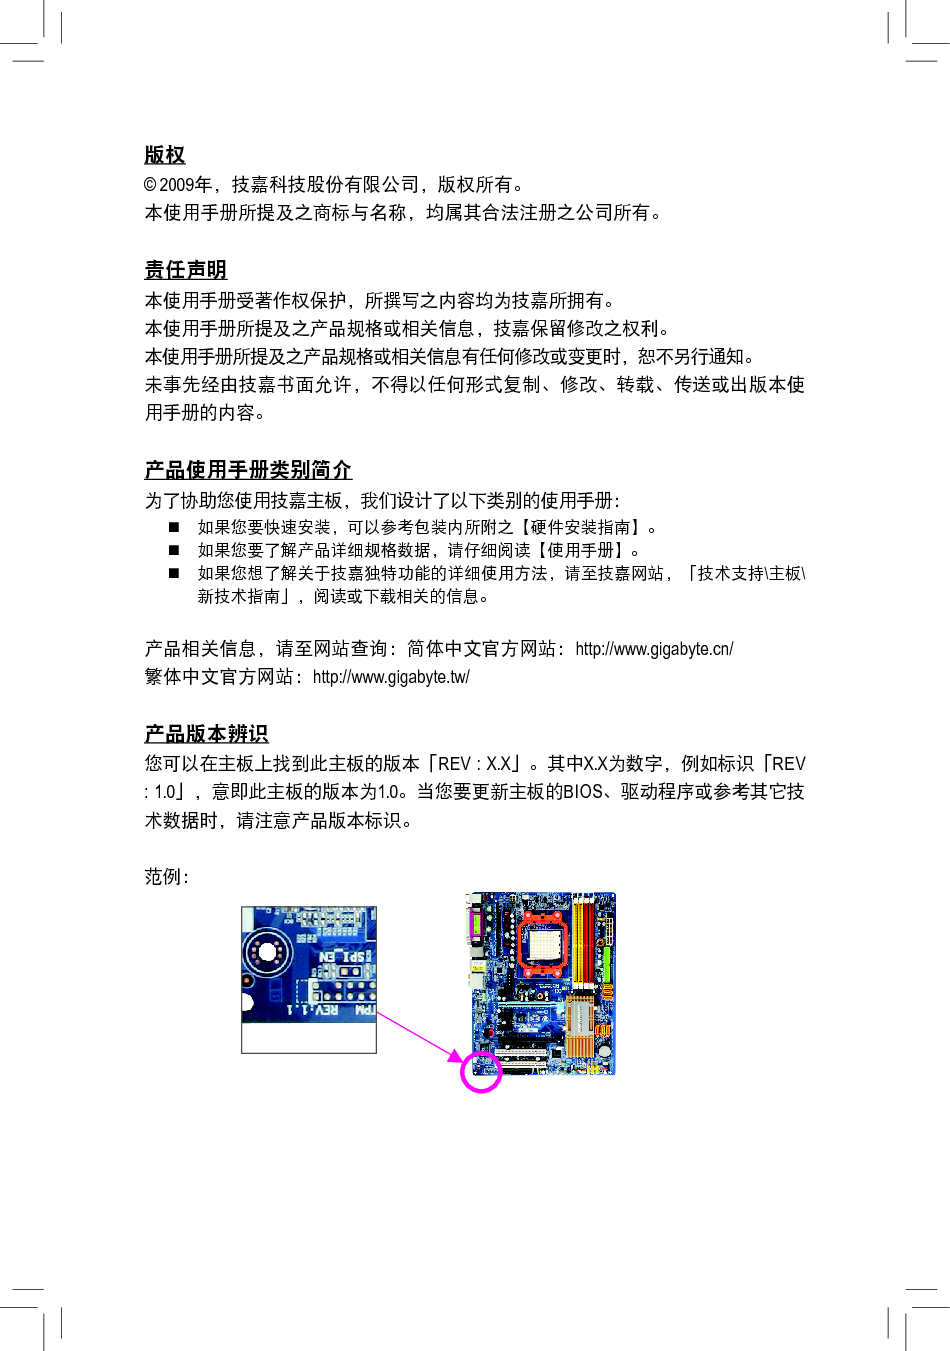 技嘉 Gigabyte GA-MA770T-UD3 1101版 使用手册 第2页